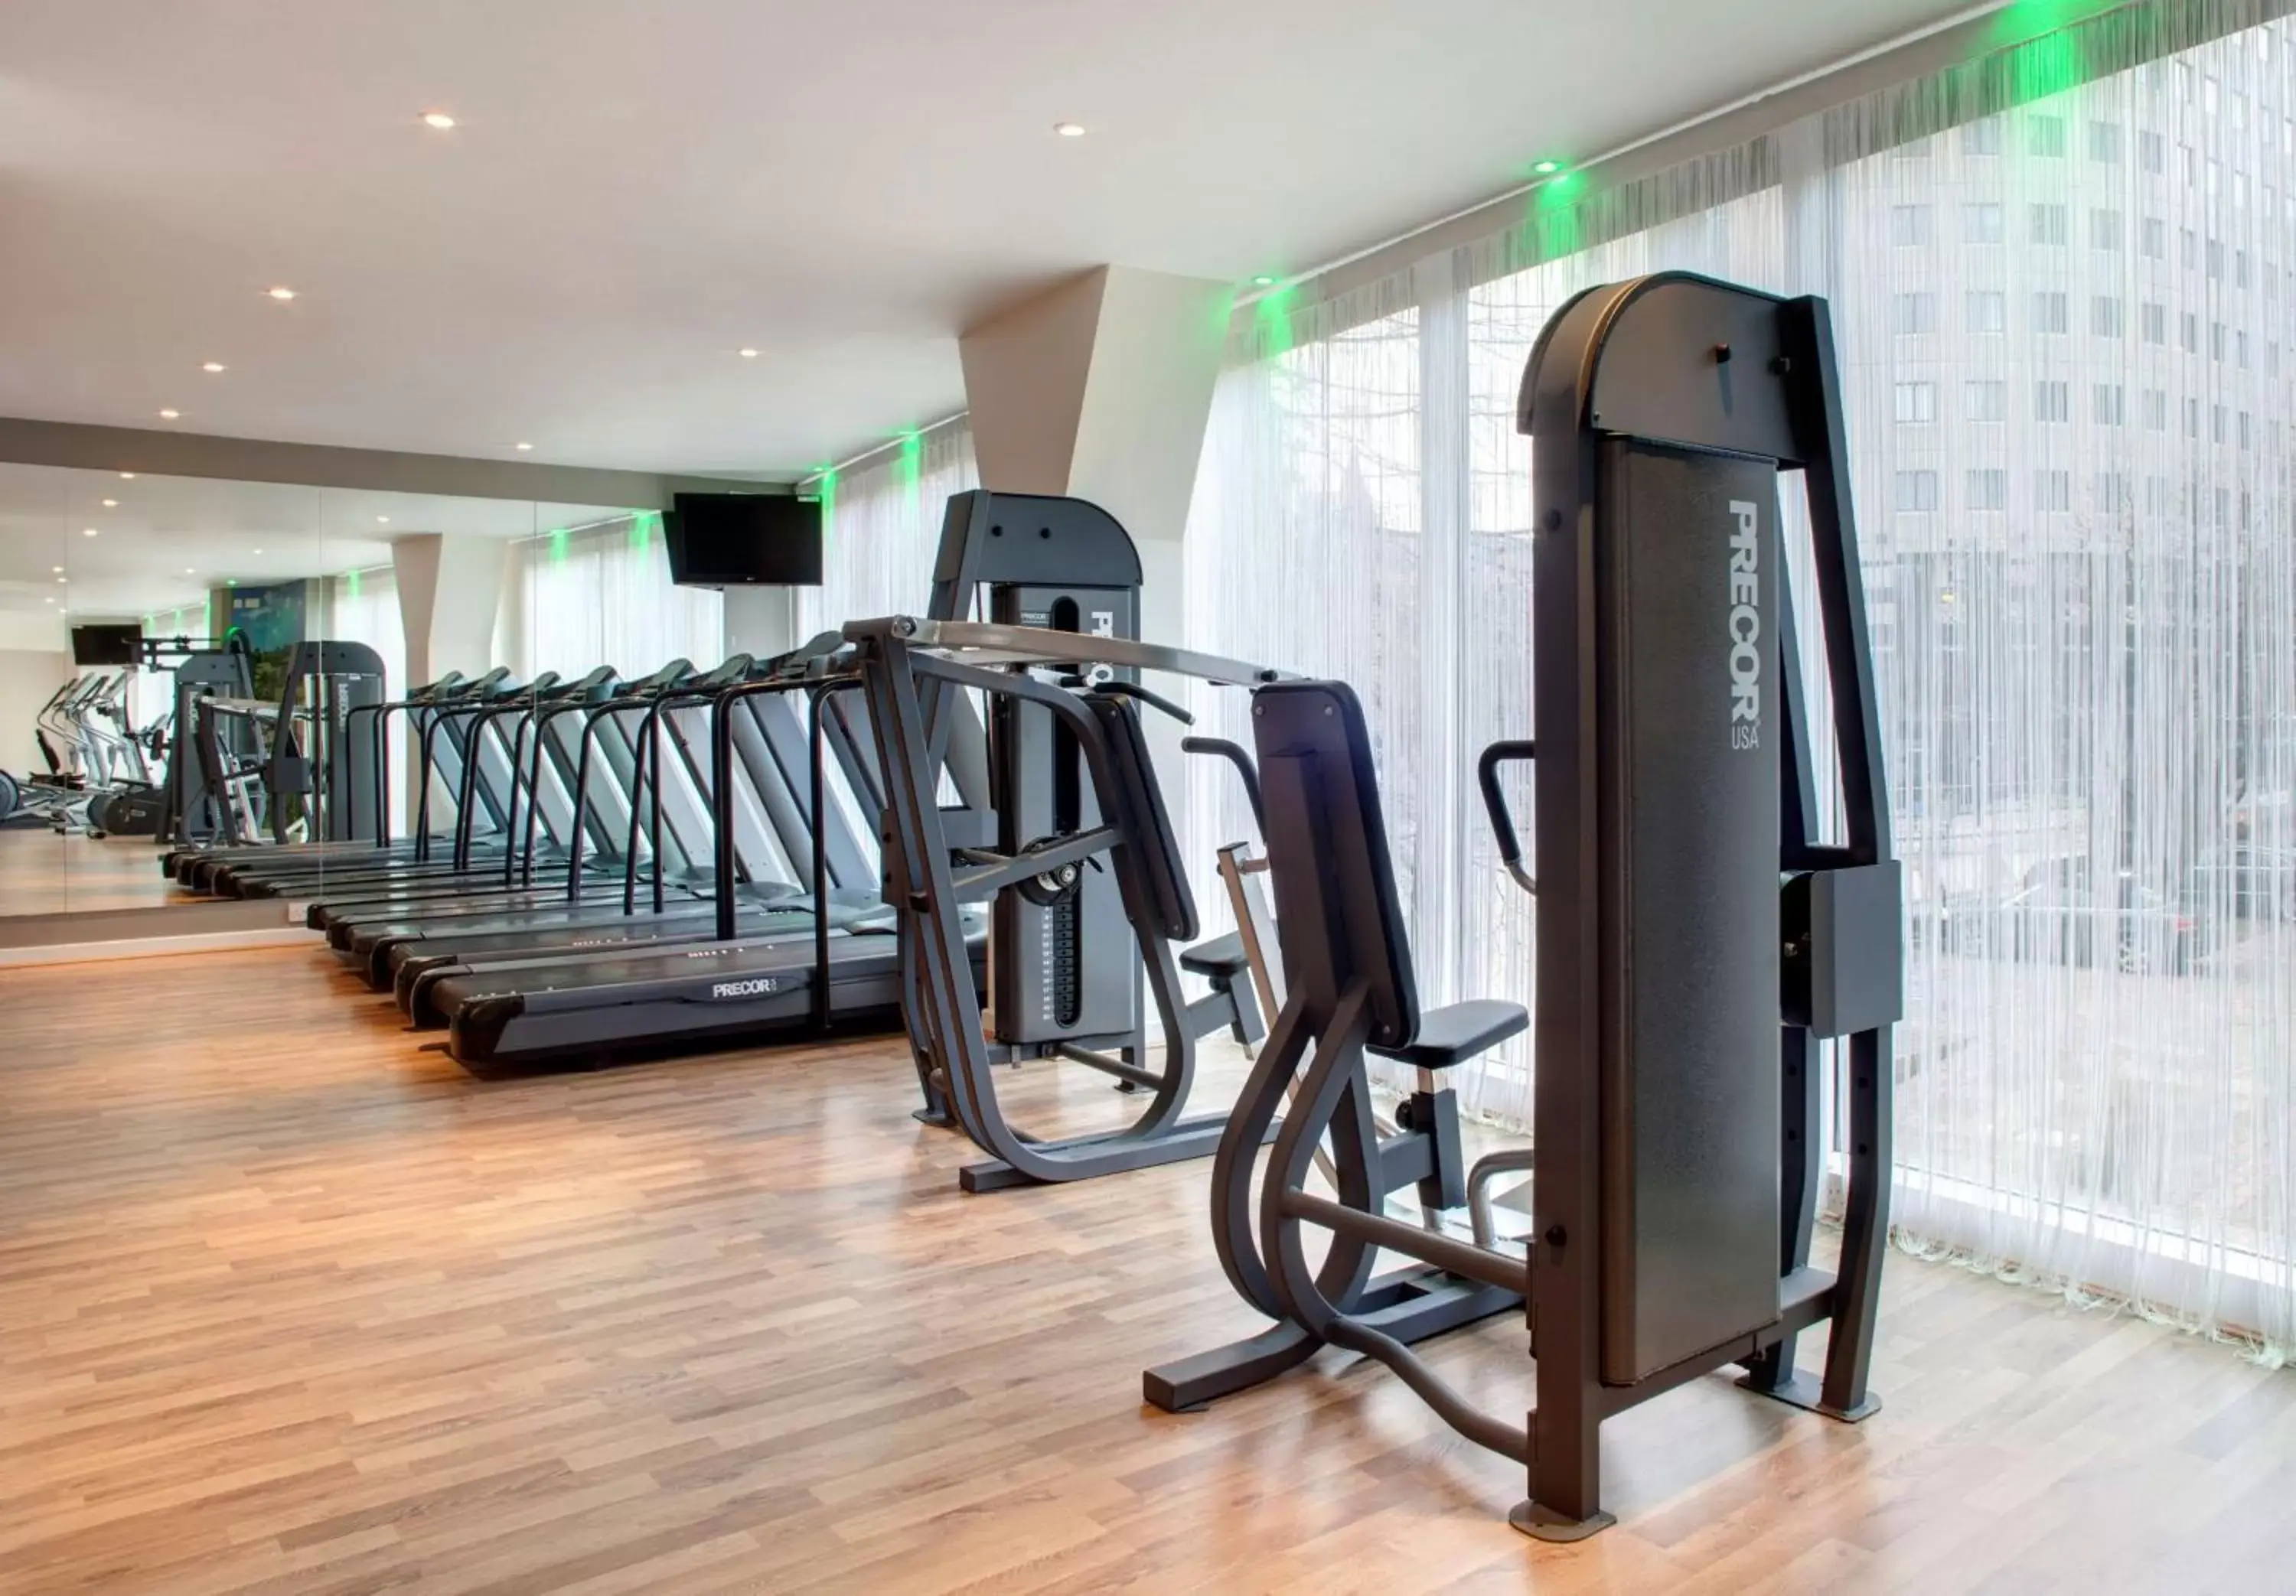 Activities, Fitness Center/Facilities in Park Plaza Leeds